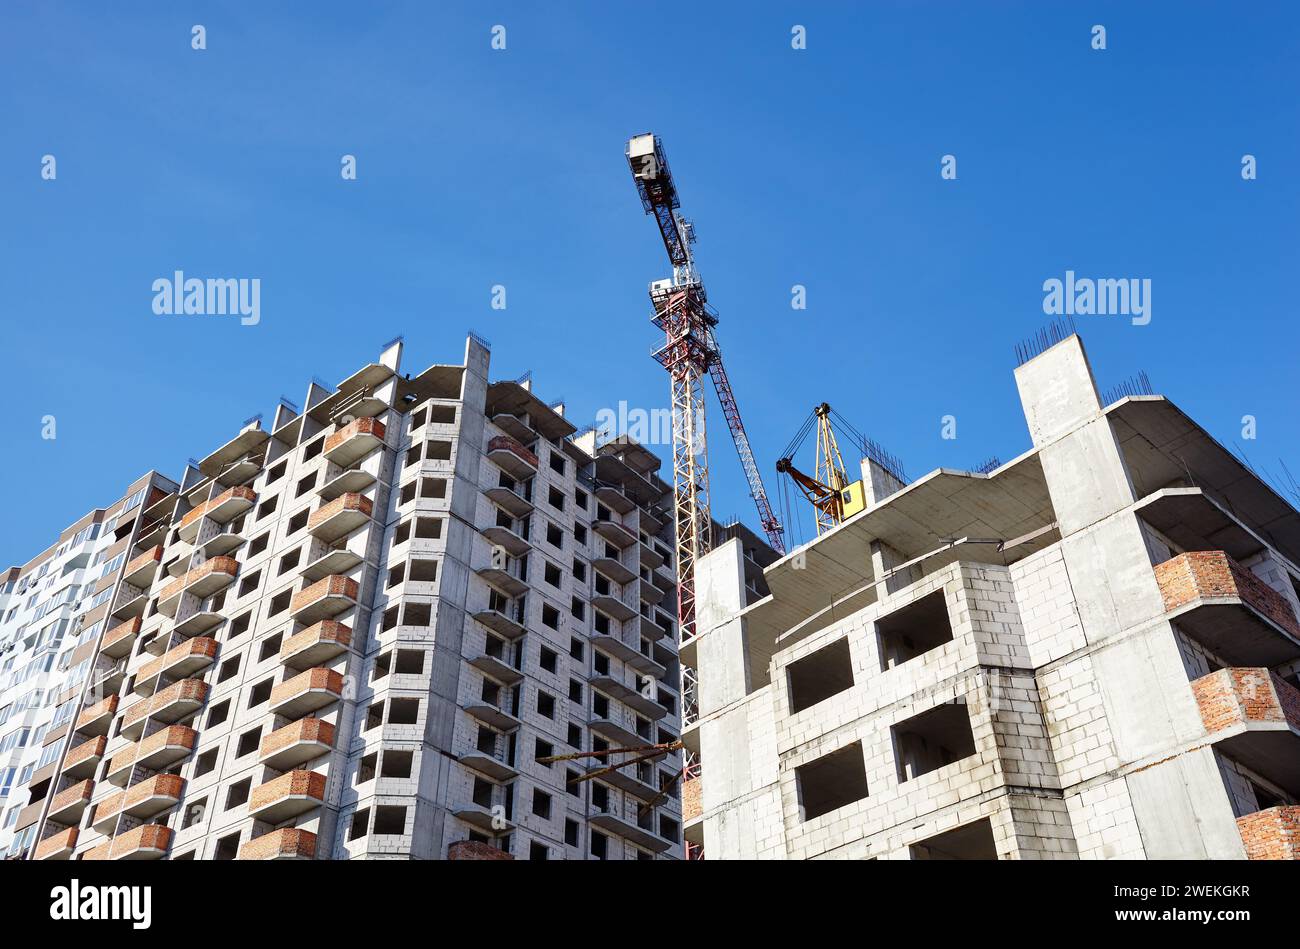 Tower cranes building a house. Concrete building under construction. Construction site Stock Photo